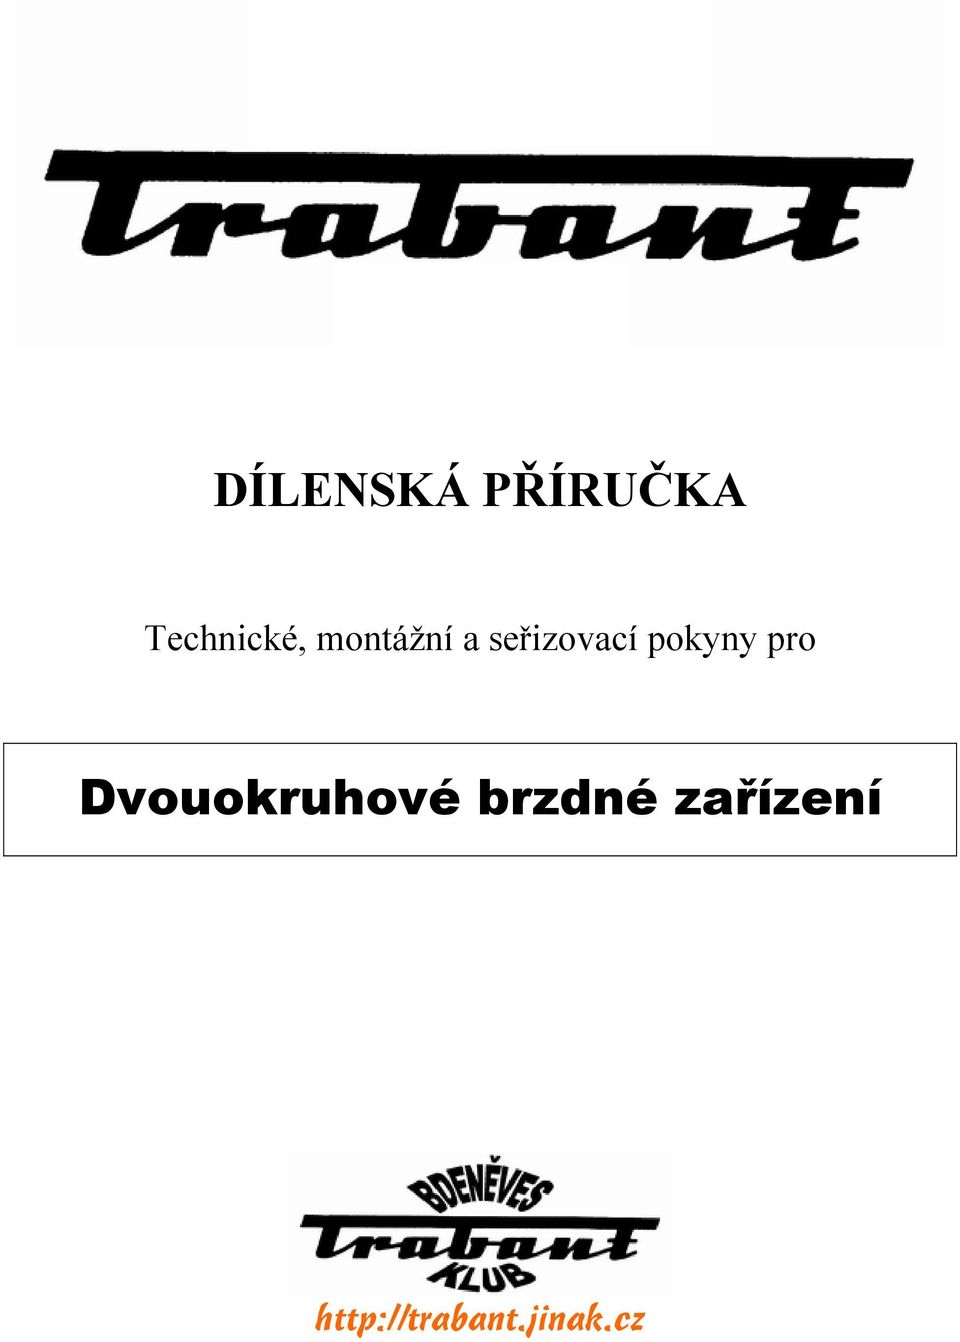 DÍLENSKÁ PŘÍRUČKA. Dvouokruhové brzdné zařízení - PDF Stažení zdarma